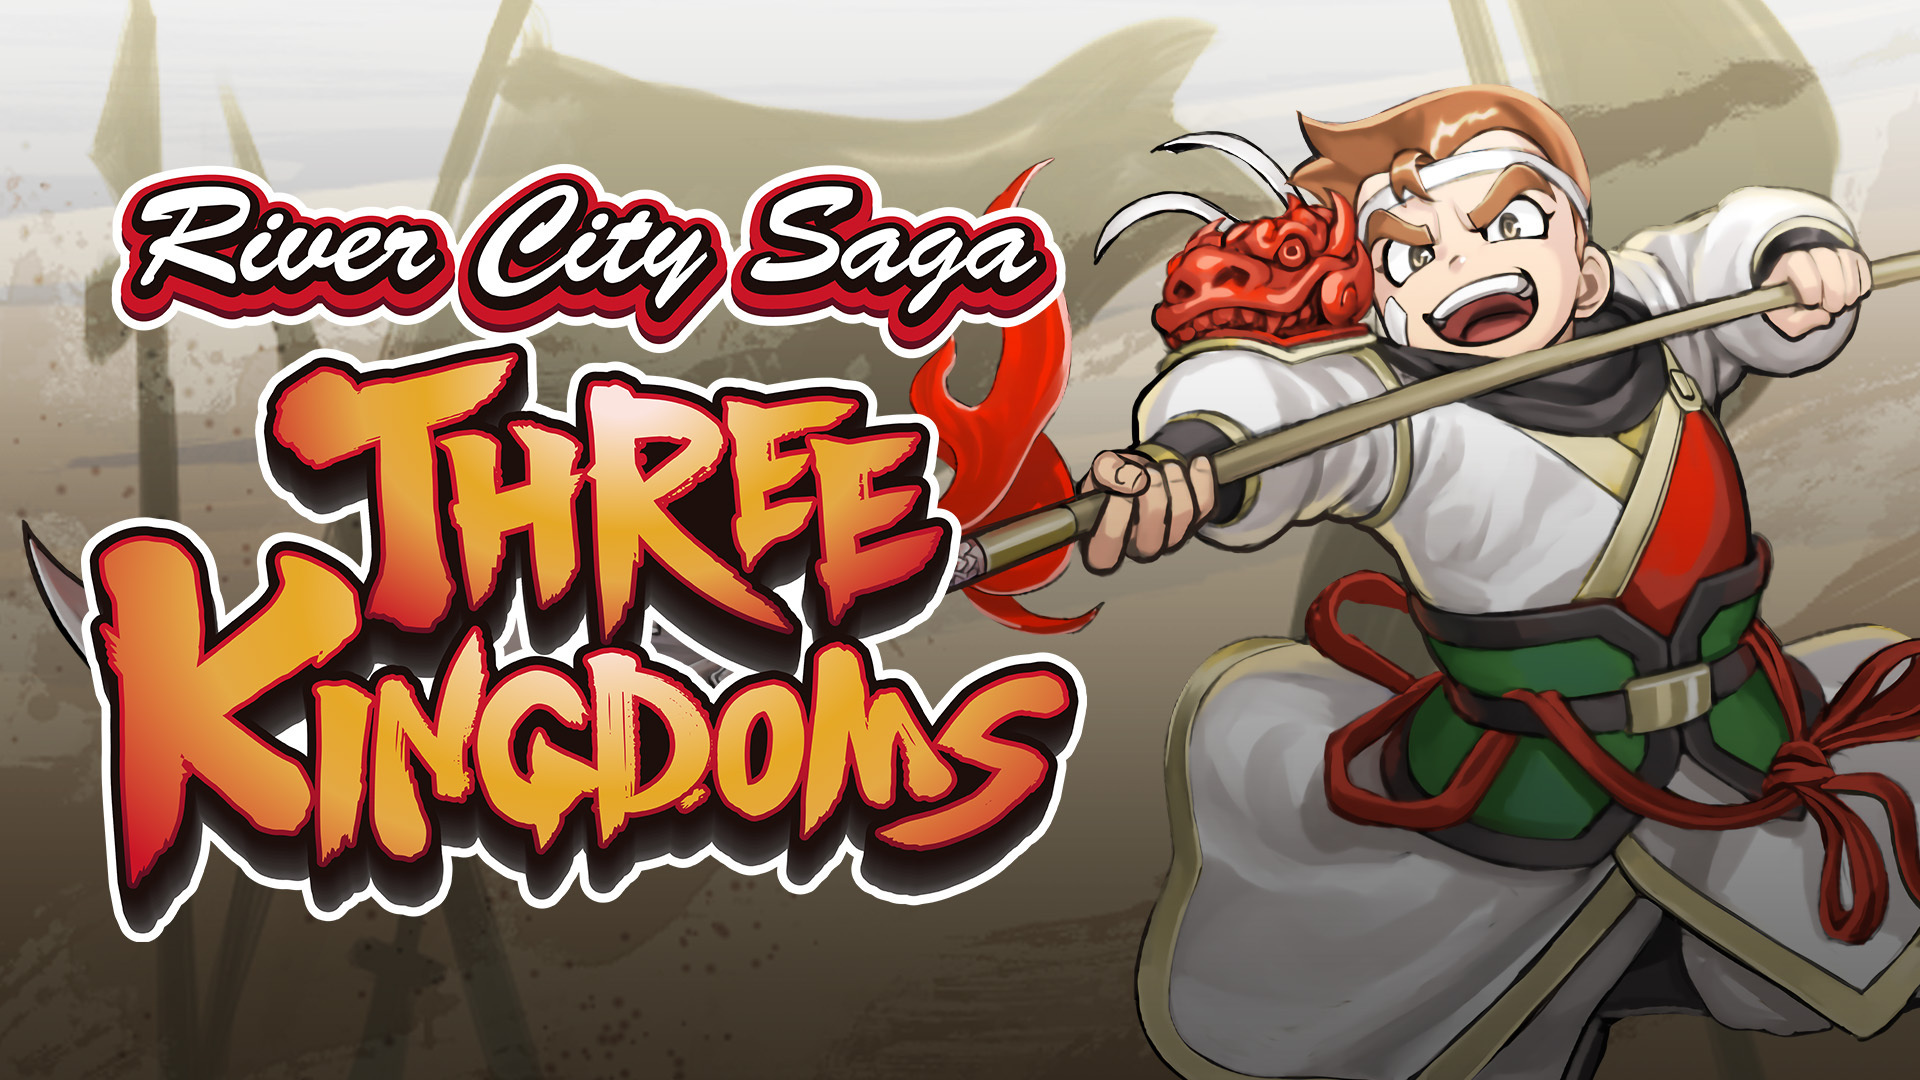 River City Saga: Three Kingdoms Announced!